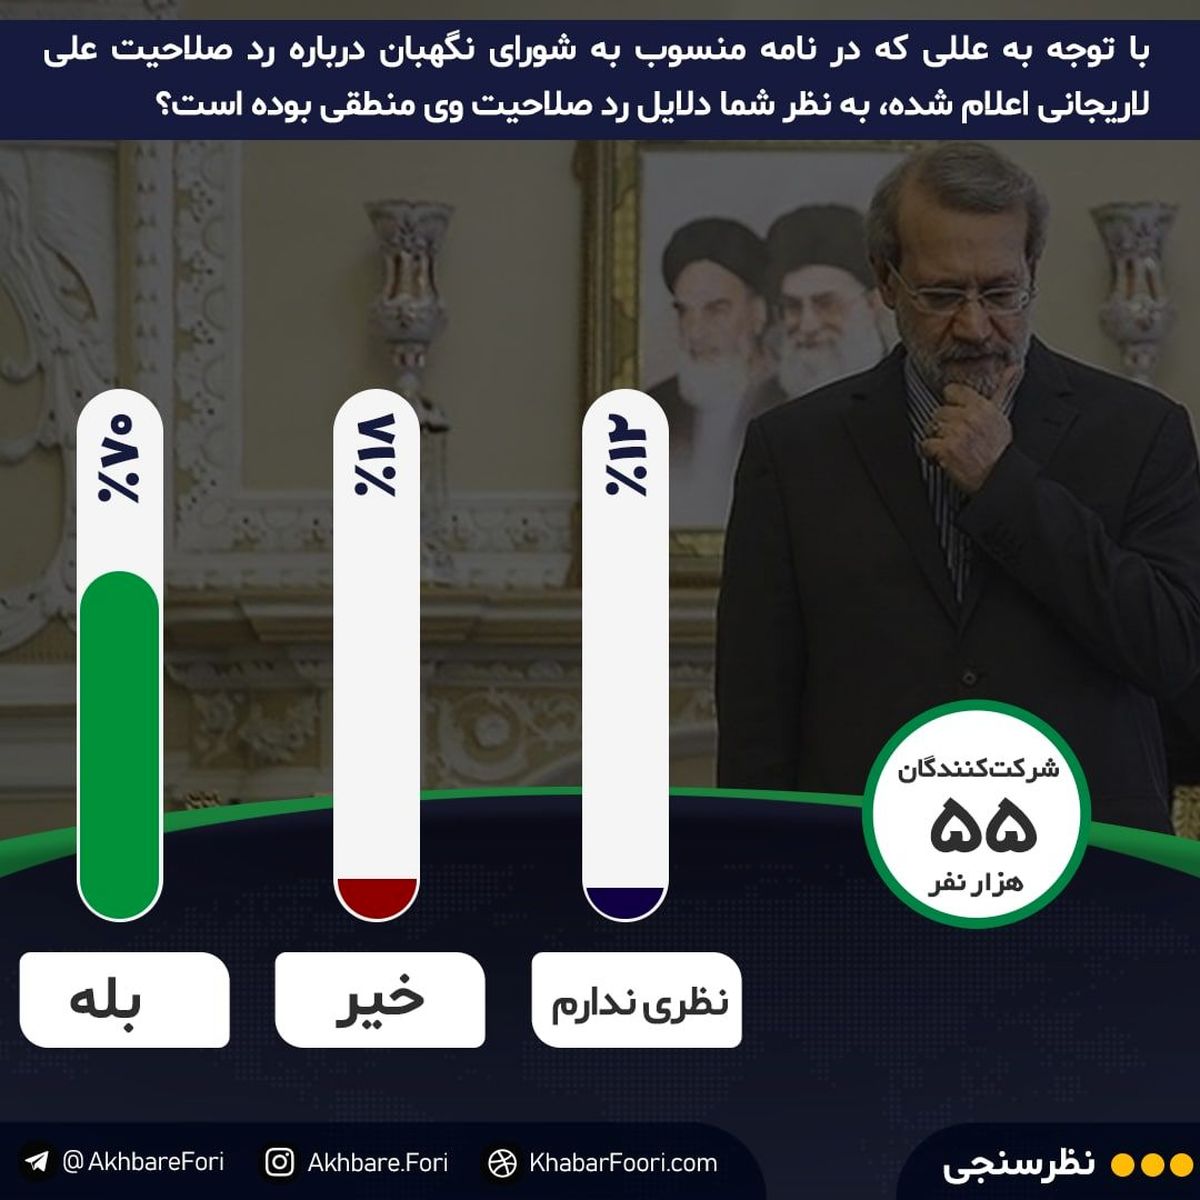 دلایل ردصلایت لاریجانی منطقی بود یا نه؟ / ۷۰درصد مخاطبان خبرفوری با شورای نگهبان موافق هستند